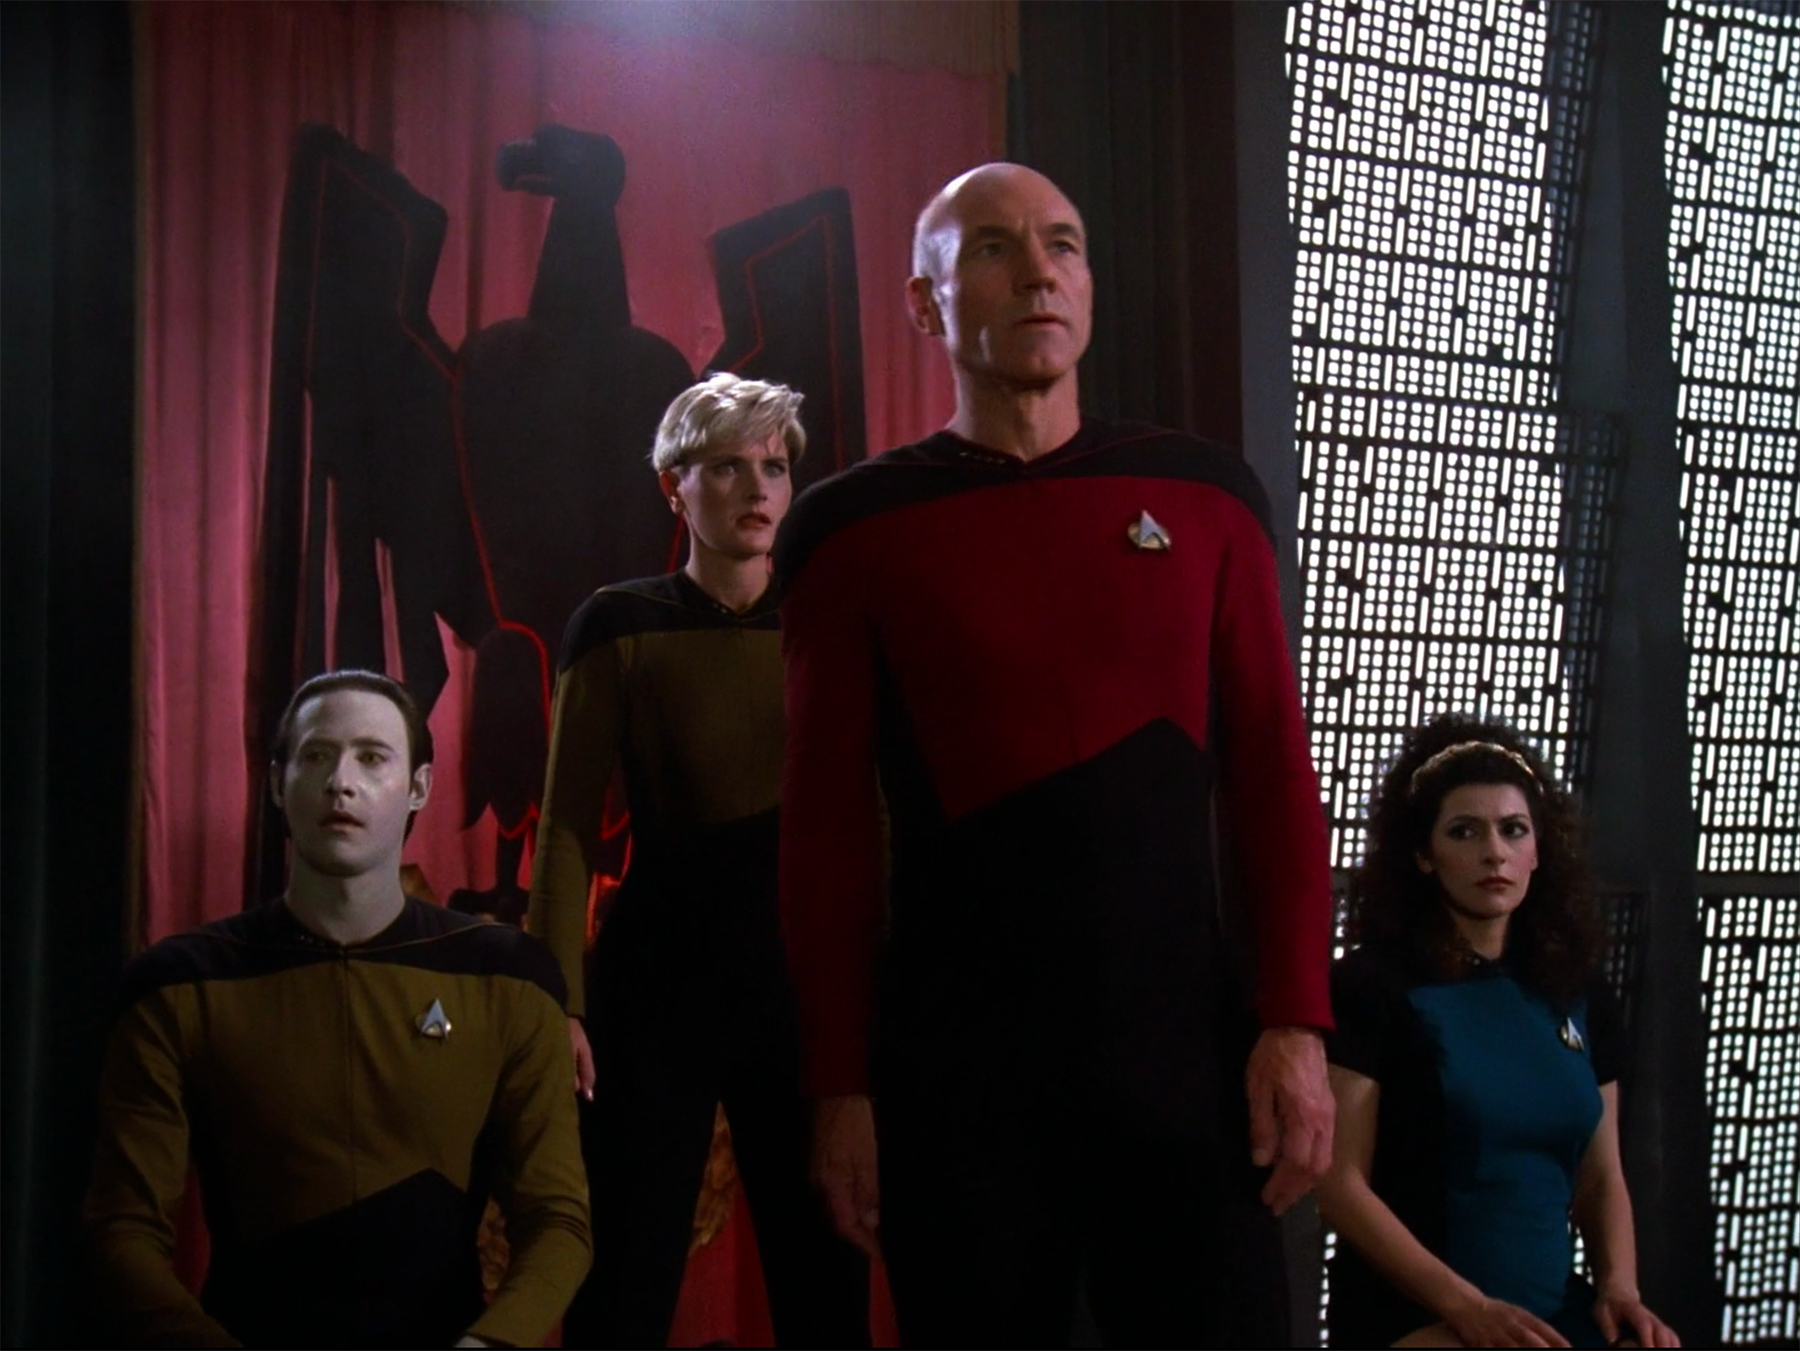 The Enterprise crew in Q's court